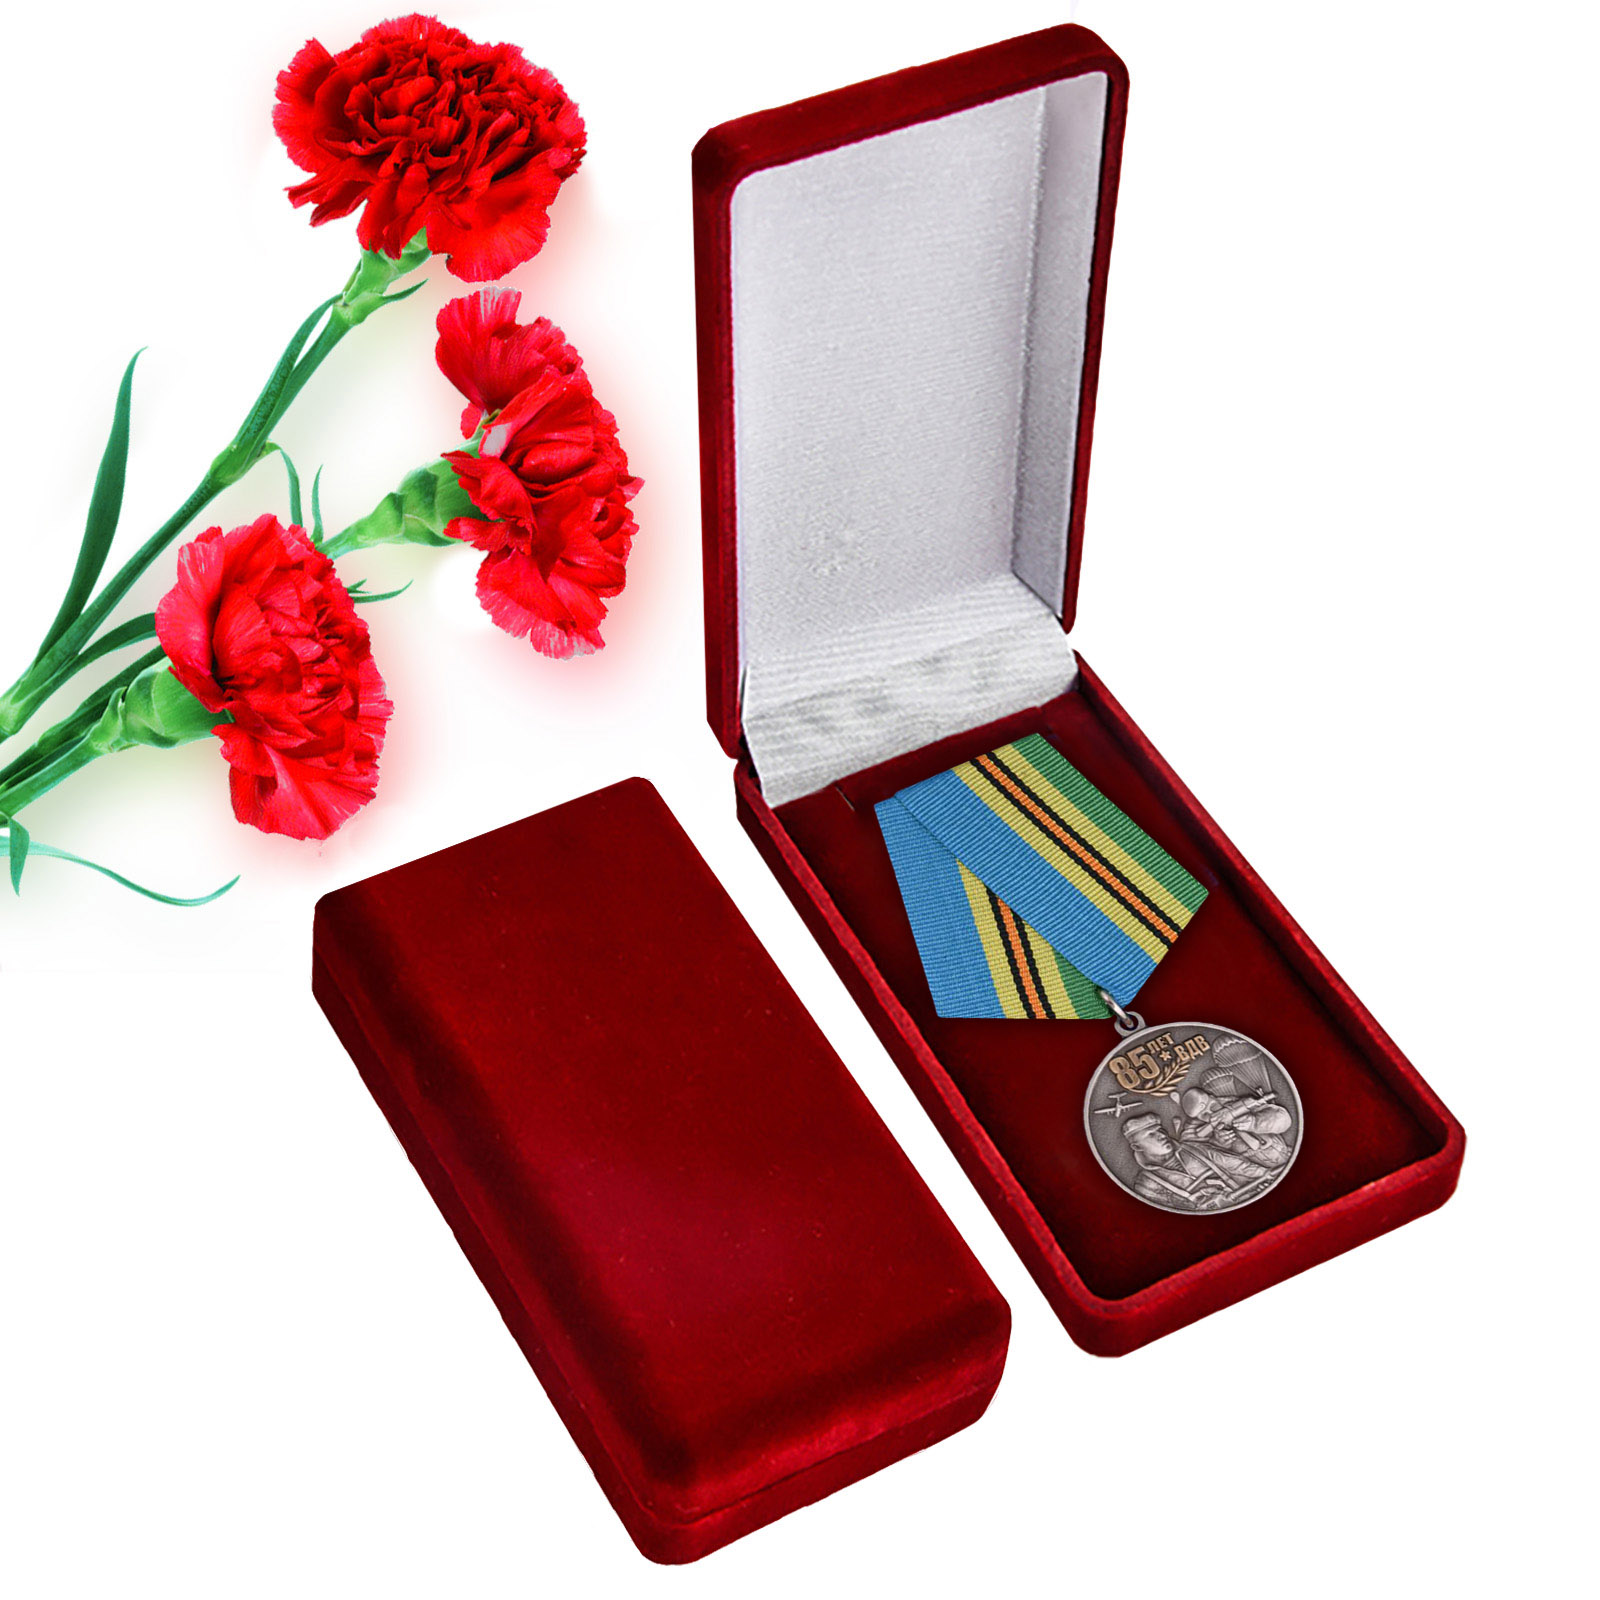 Купить юбилейную медаль Воздушно-десантных войск по лучшей цене